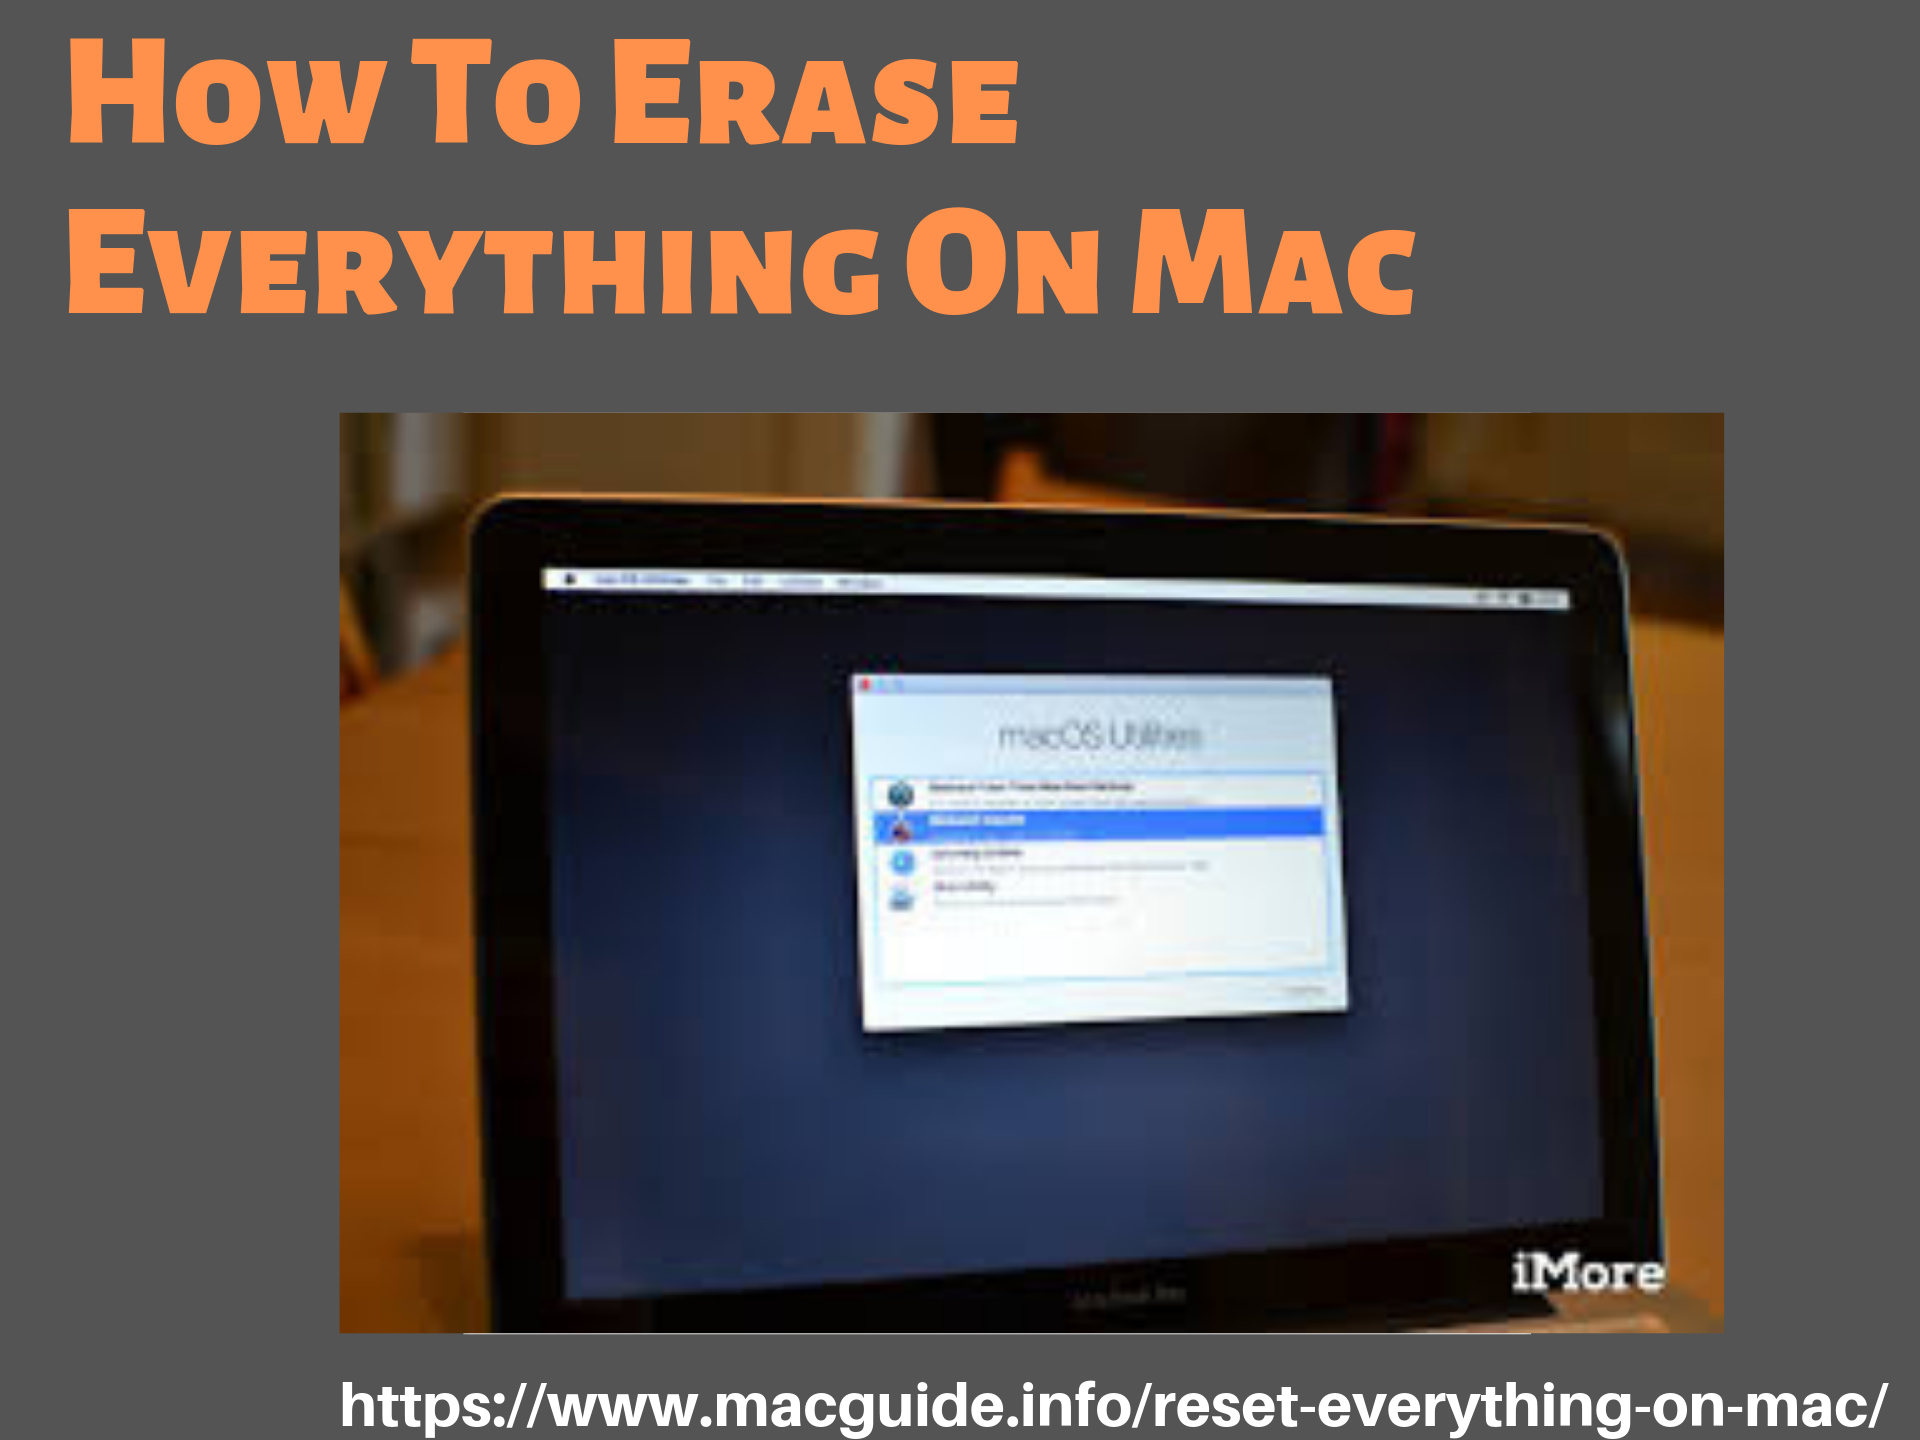 erase failed mac